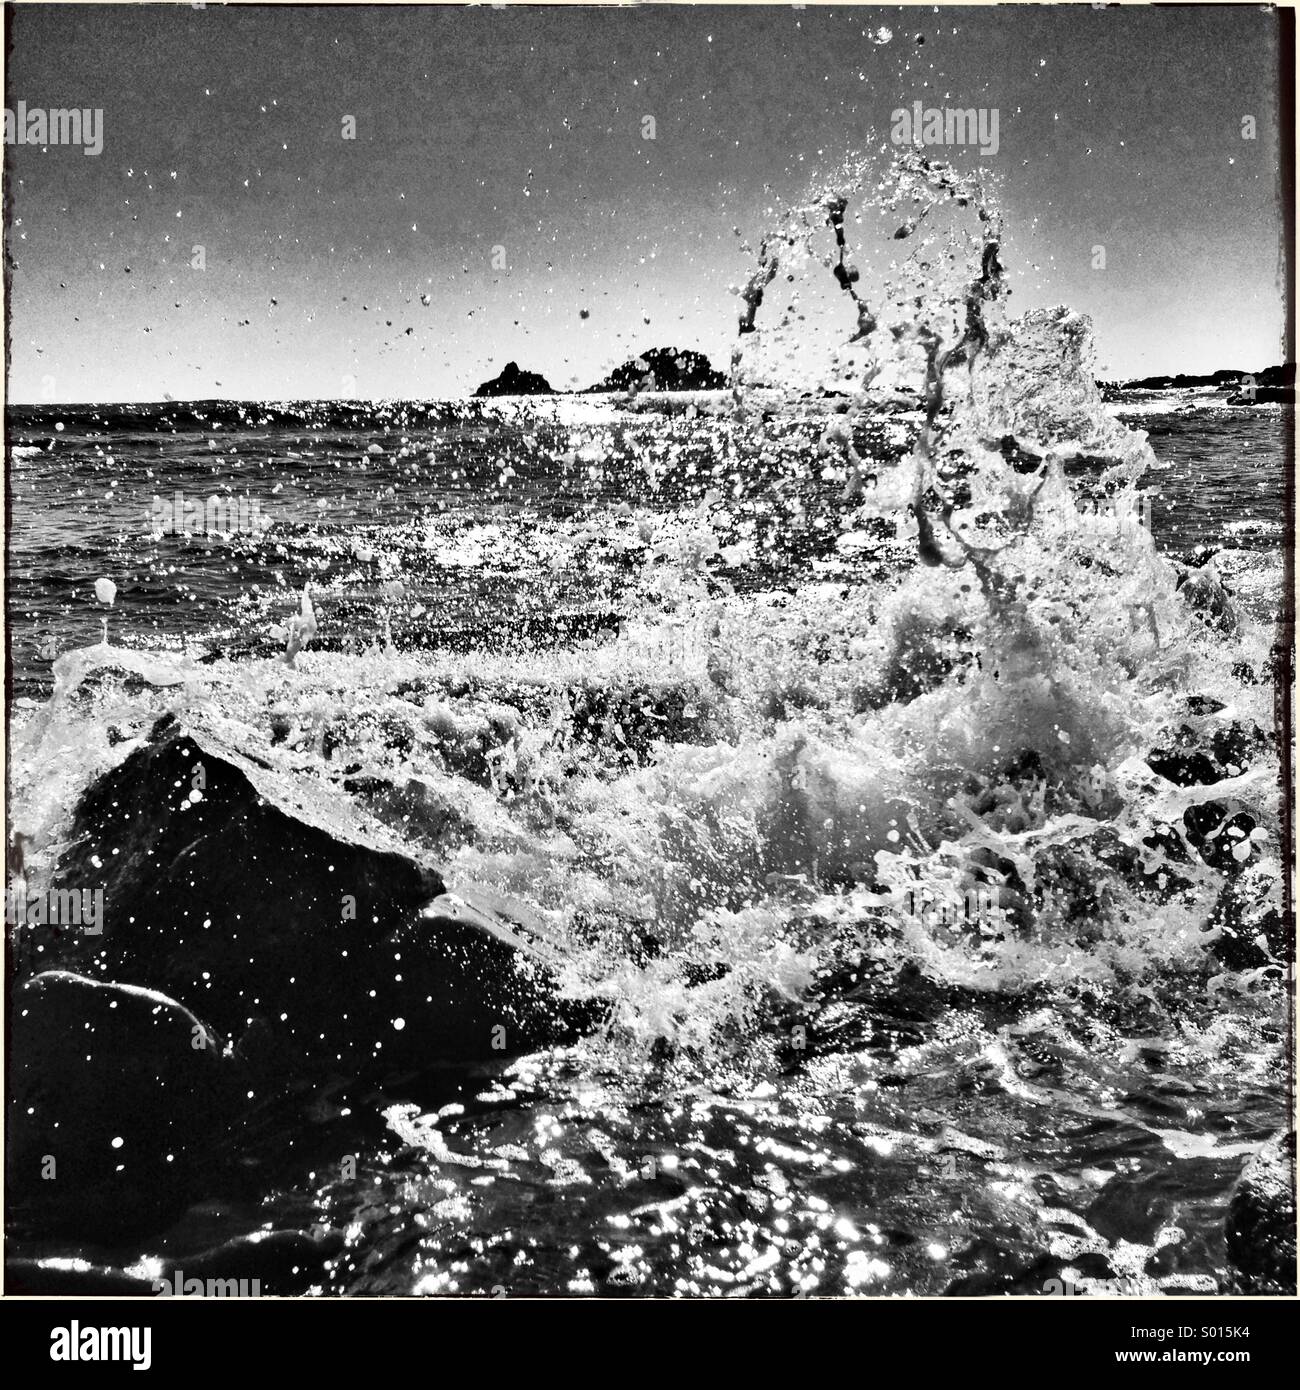 Immagine in bianco e nero di spruzzi d'acqua sulle rocce Foto Stock